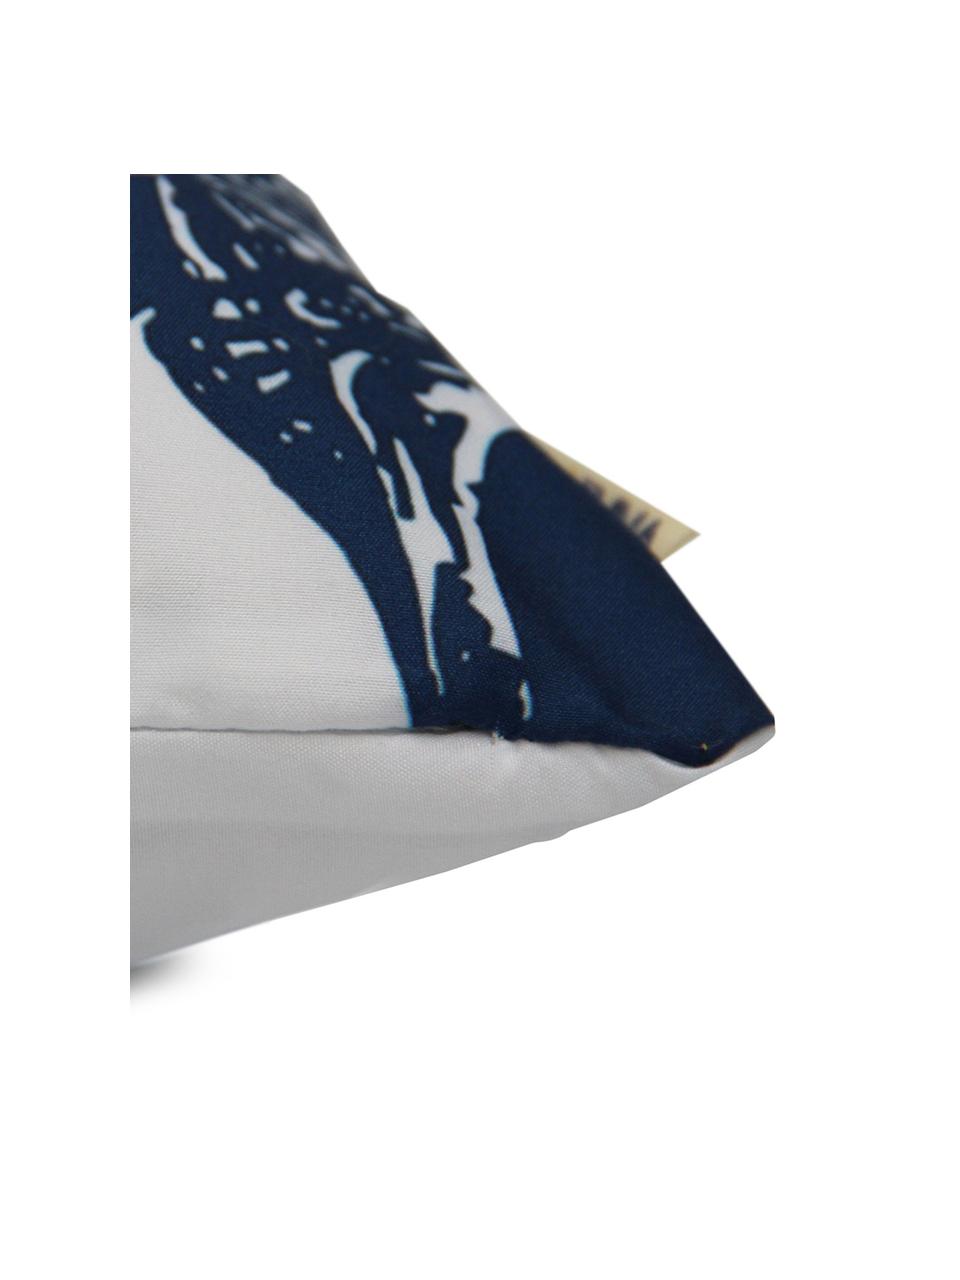 Poszewka na poduszkę Aga, Poliester, Biały, niebieski, S 40 x D 40 cm